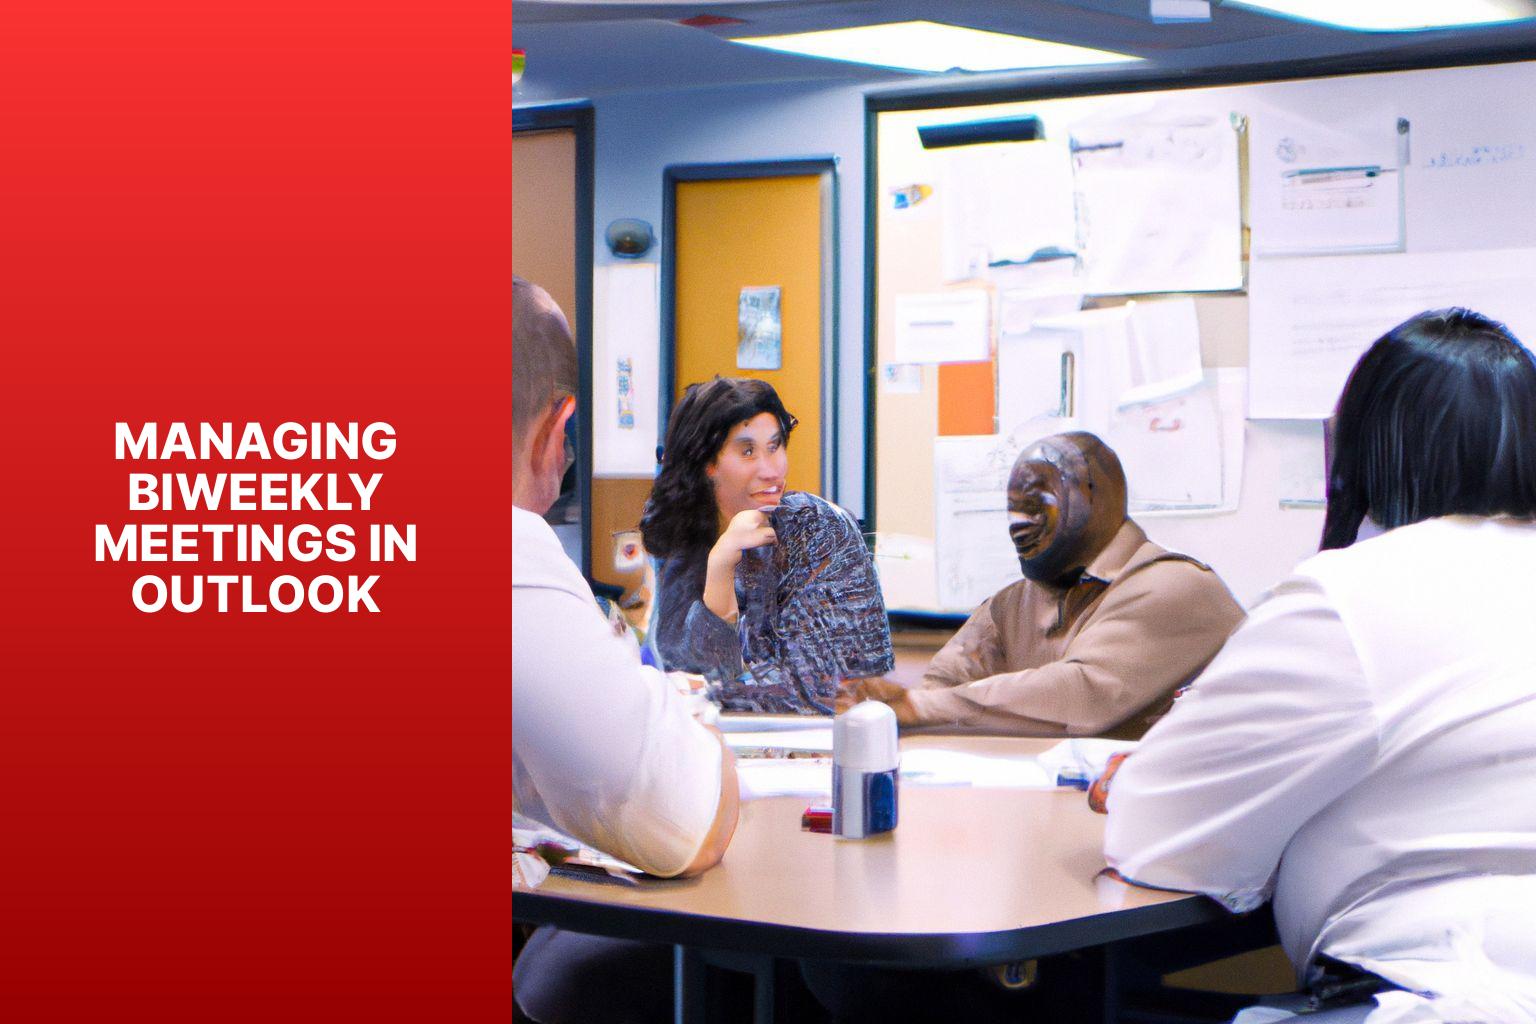 Managing Biweekly Meetings in Outlook - how to set up biweekly meeting in outlook 